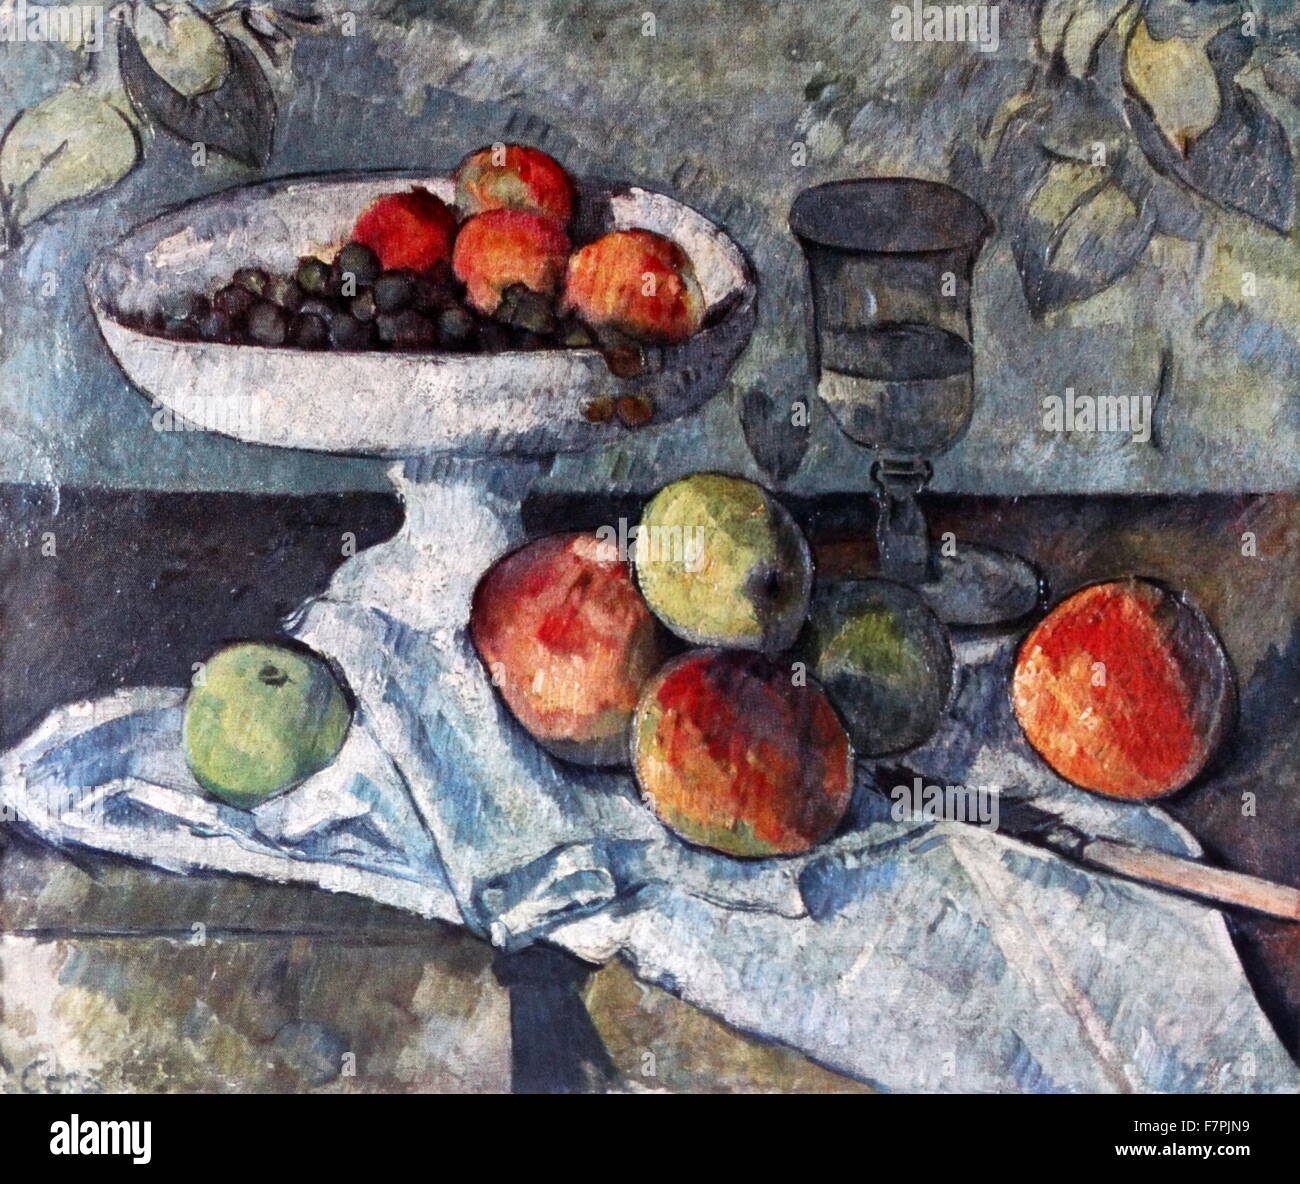 Gemälde mit dem Titel "Obstschale, Glas und Äpfel" von Paul Cézanne (1839-1906) französische Künstler und Post-Impressionisten Maler. Vom 19. Jahrhundert Stockfoto